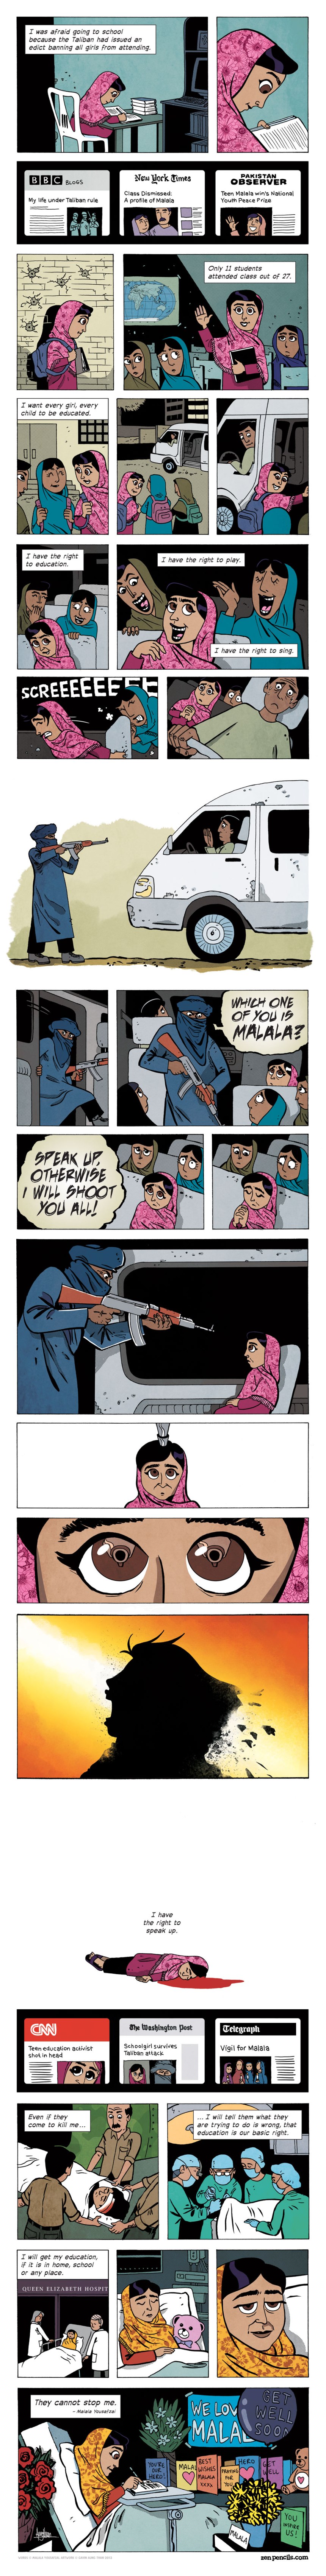 Malala-Yousafzai-zen-pencils